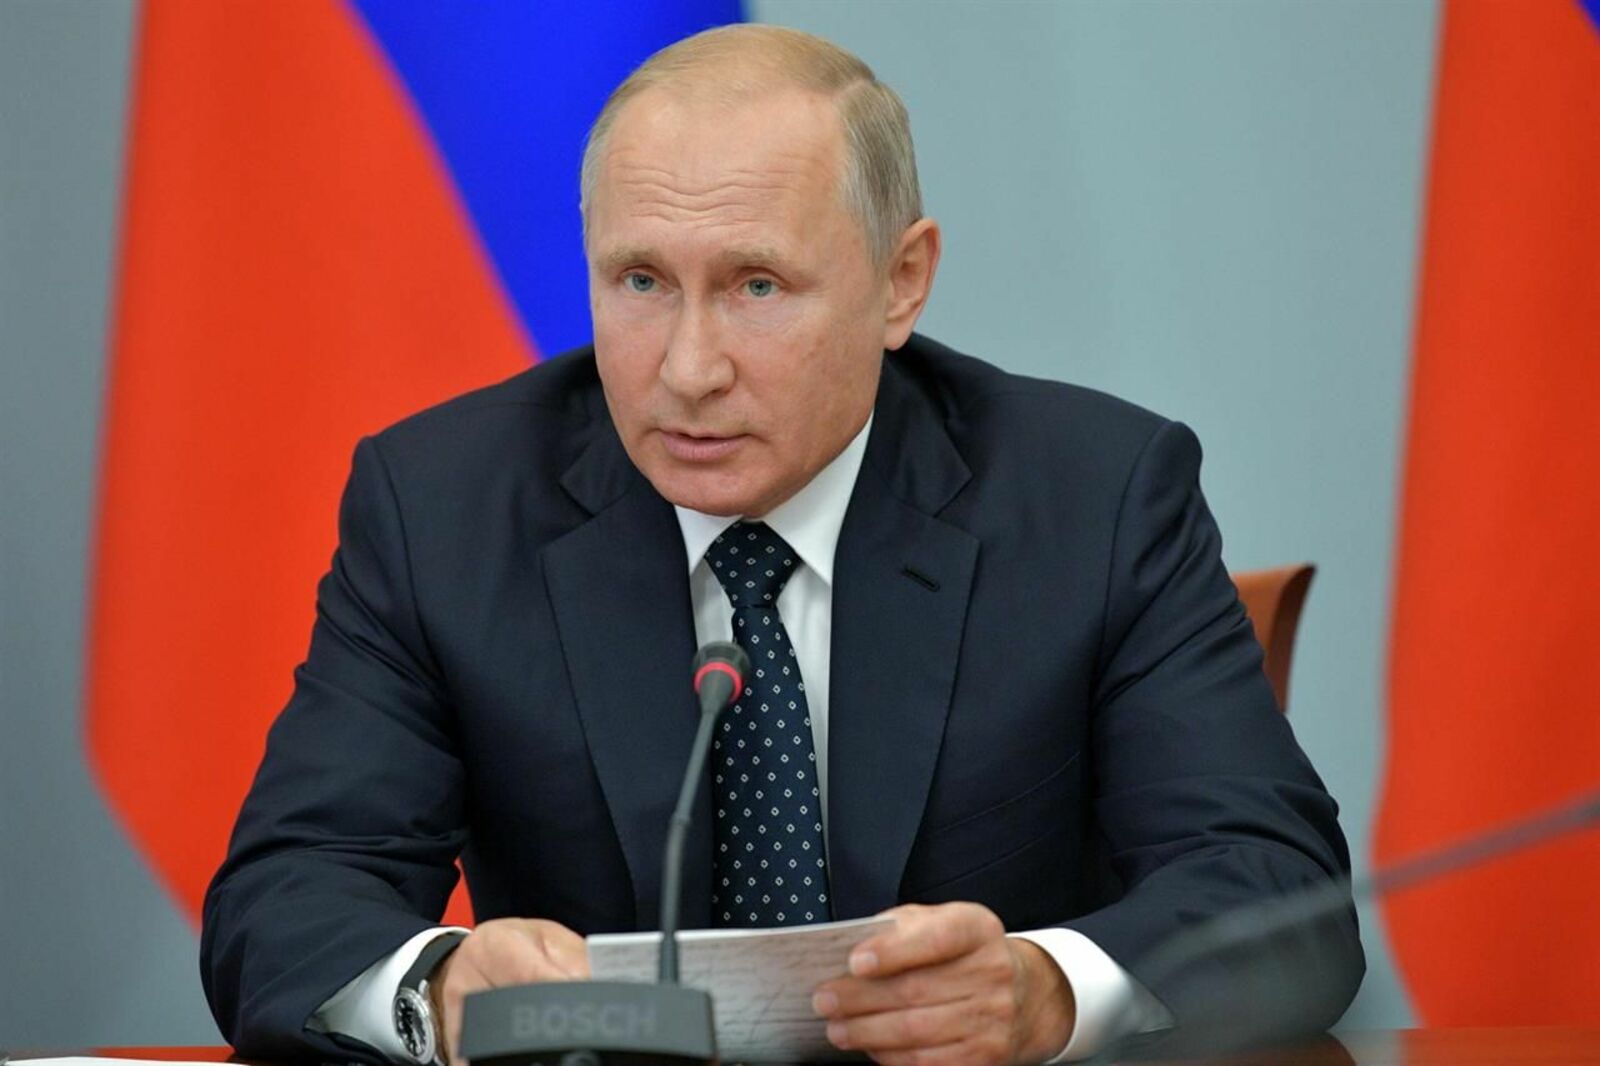 Путин призвал усиливать технологический суверенитет в сельском хозяйстве